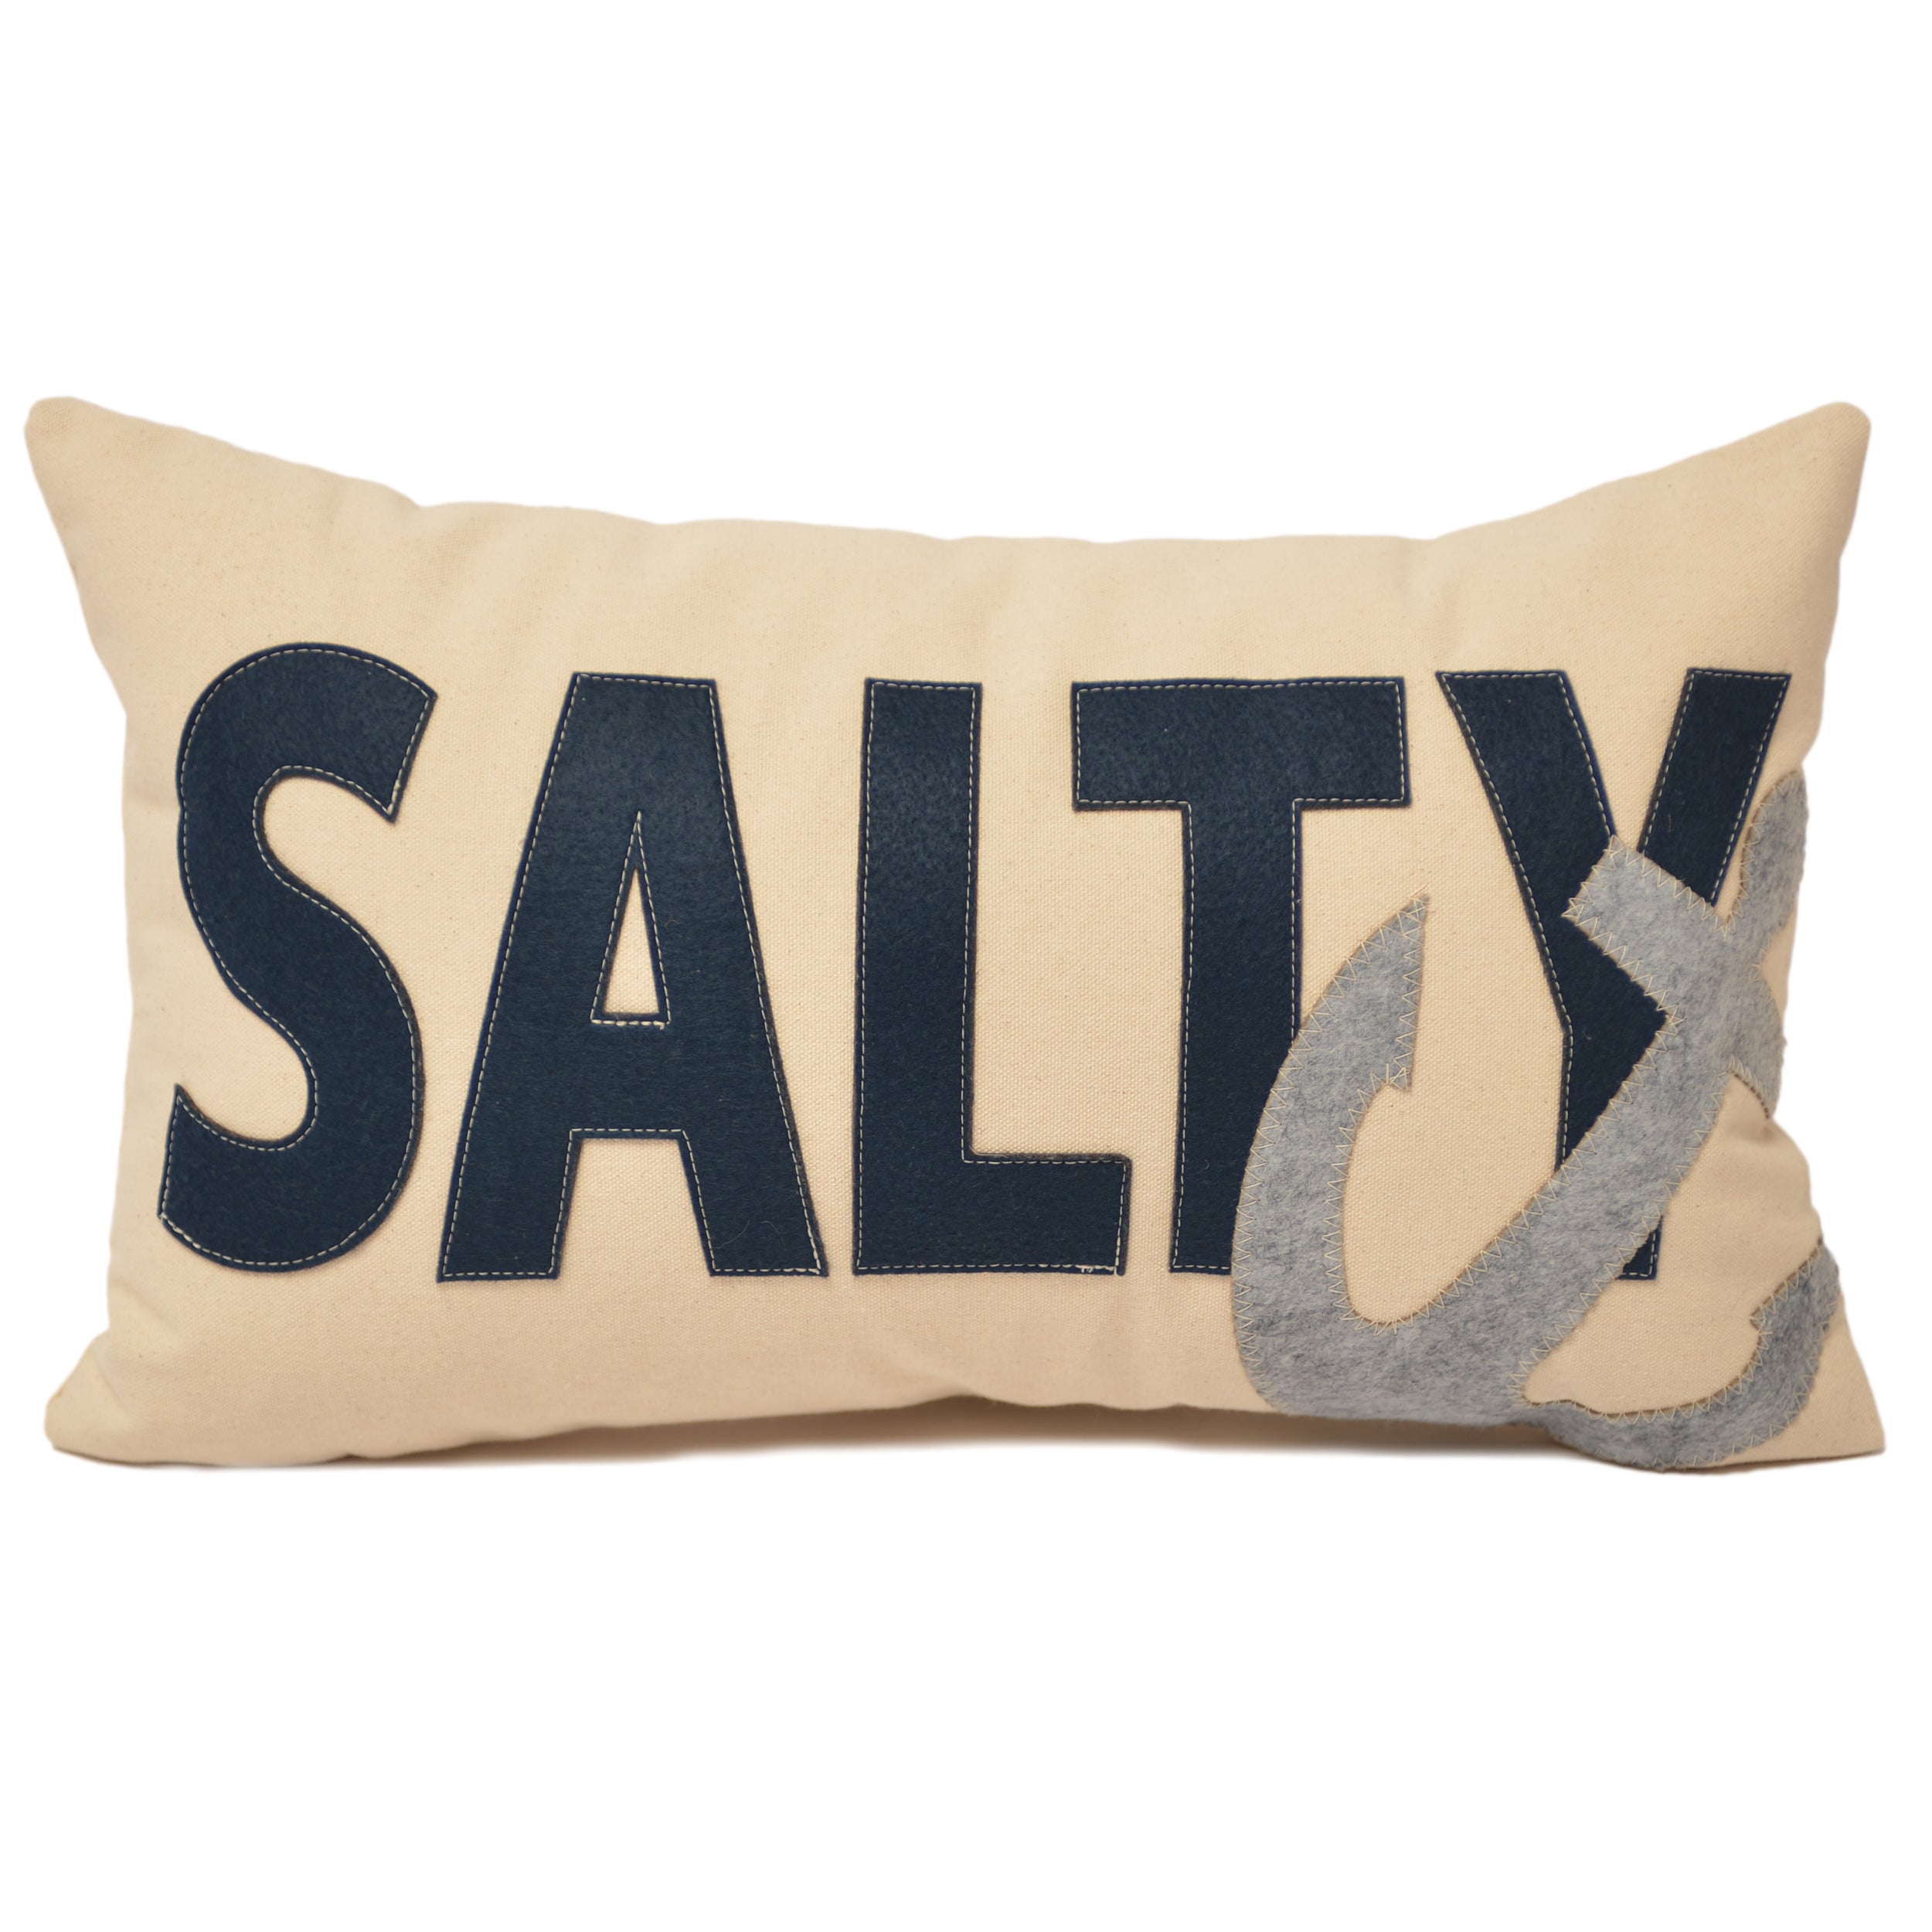 14x21" SALTY Anchor lumbar pillow - Navy with Grey